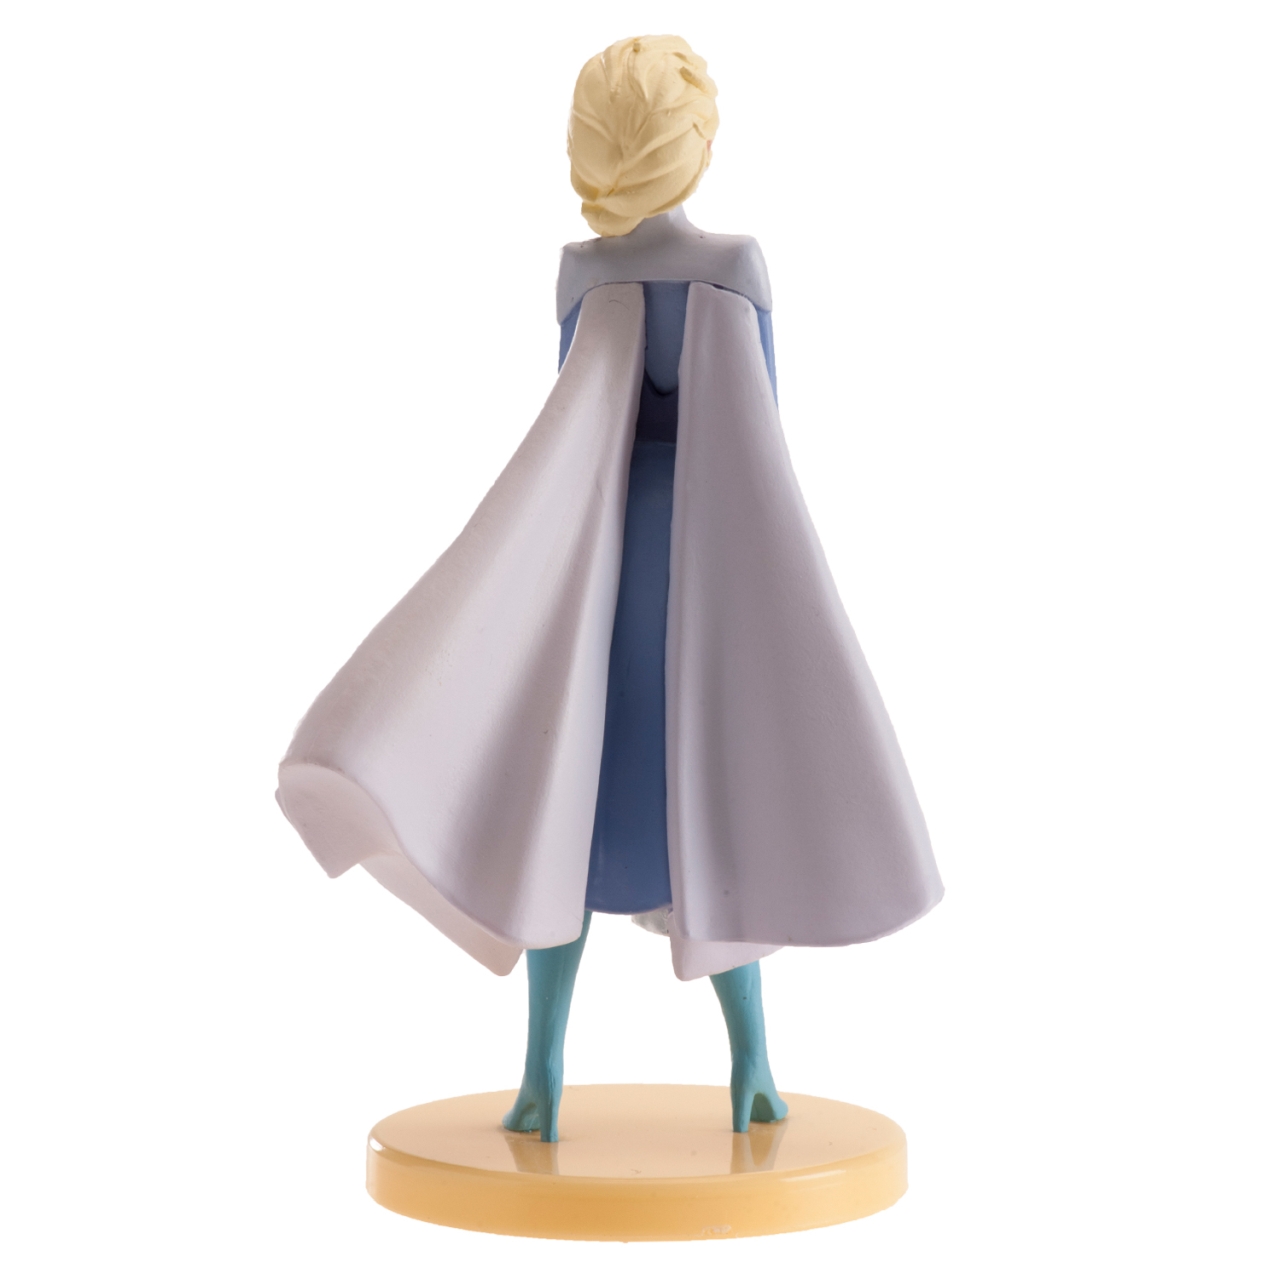 Disney Figur - ELSA FROZEN 2 - PVC 9,5 cm - Dekora